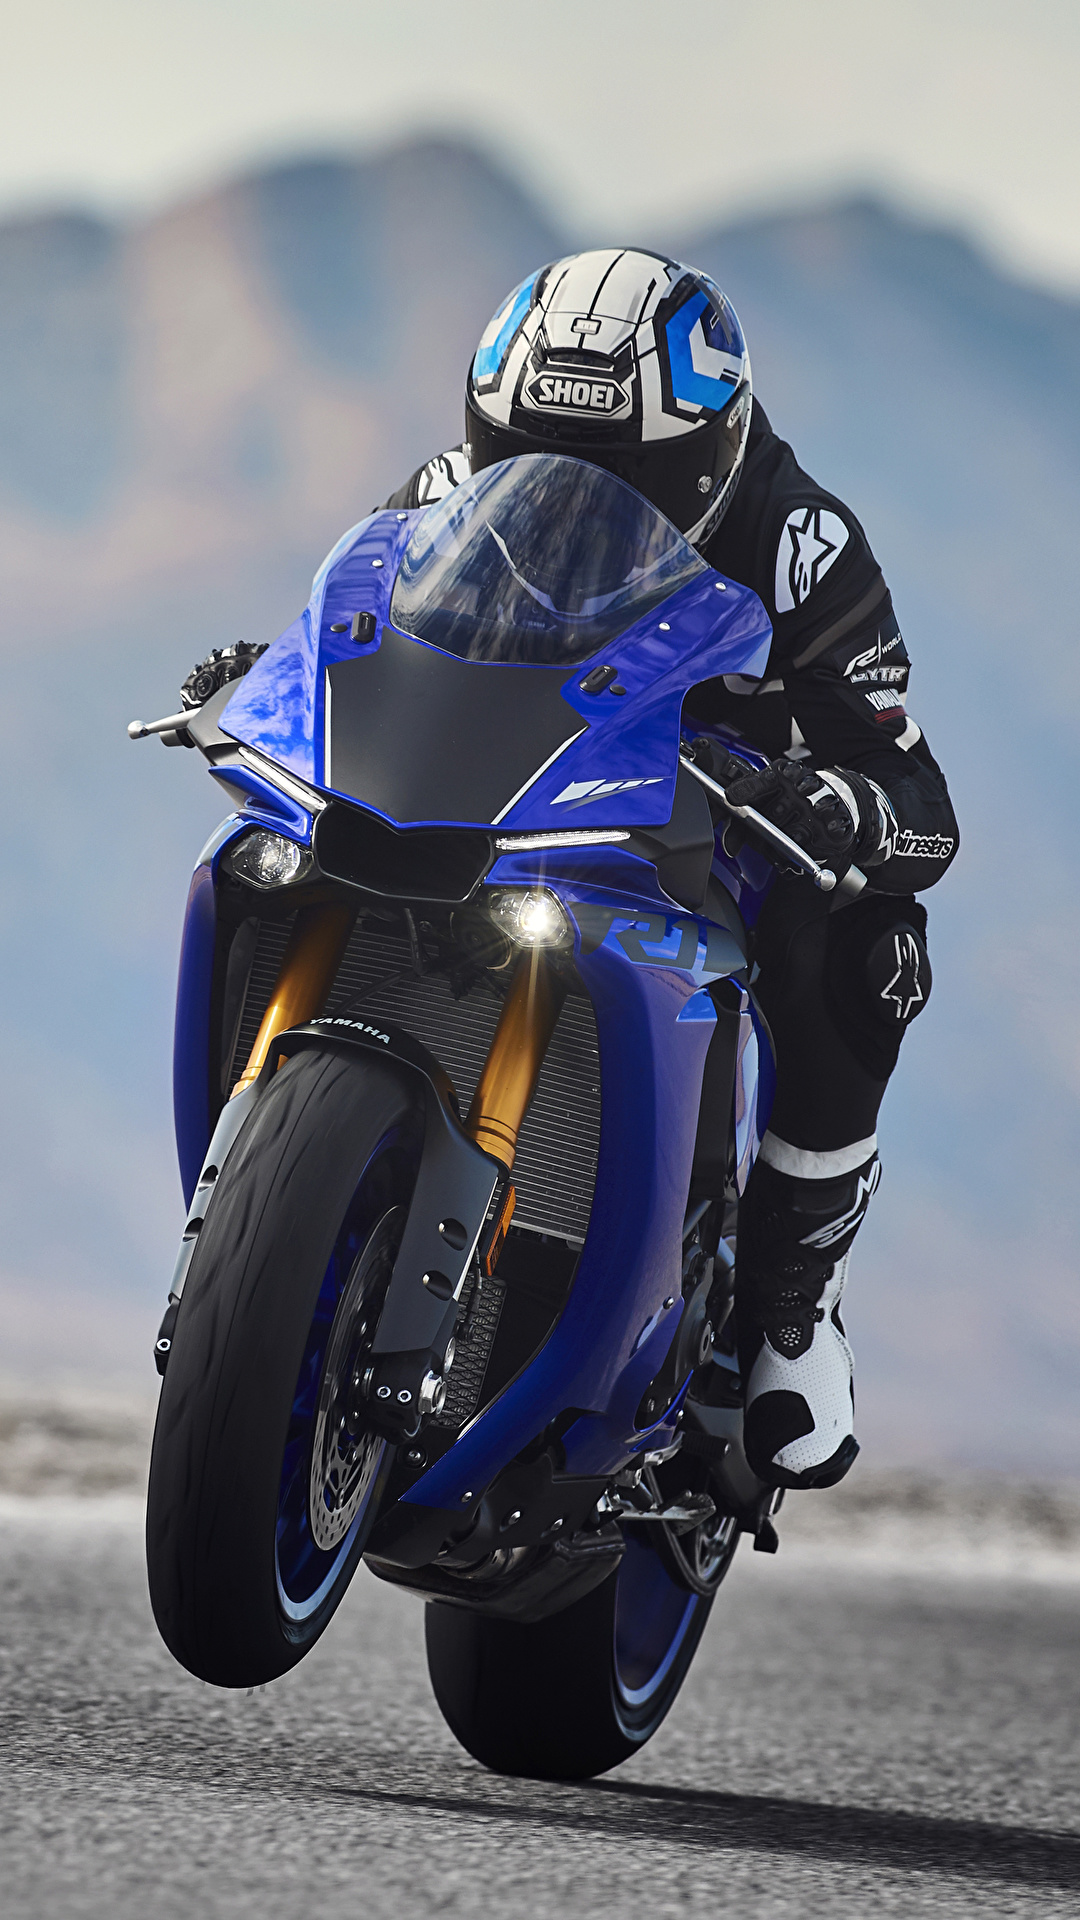 壁紙 1080x19 ヤマハ 18 Yzf R1 モーターサイクリスト ヘルメット 運動 オートバイ ダウンロード 写真